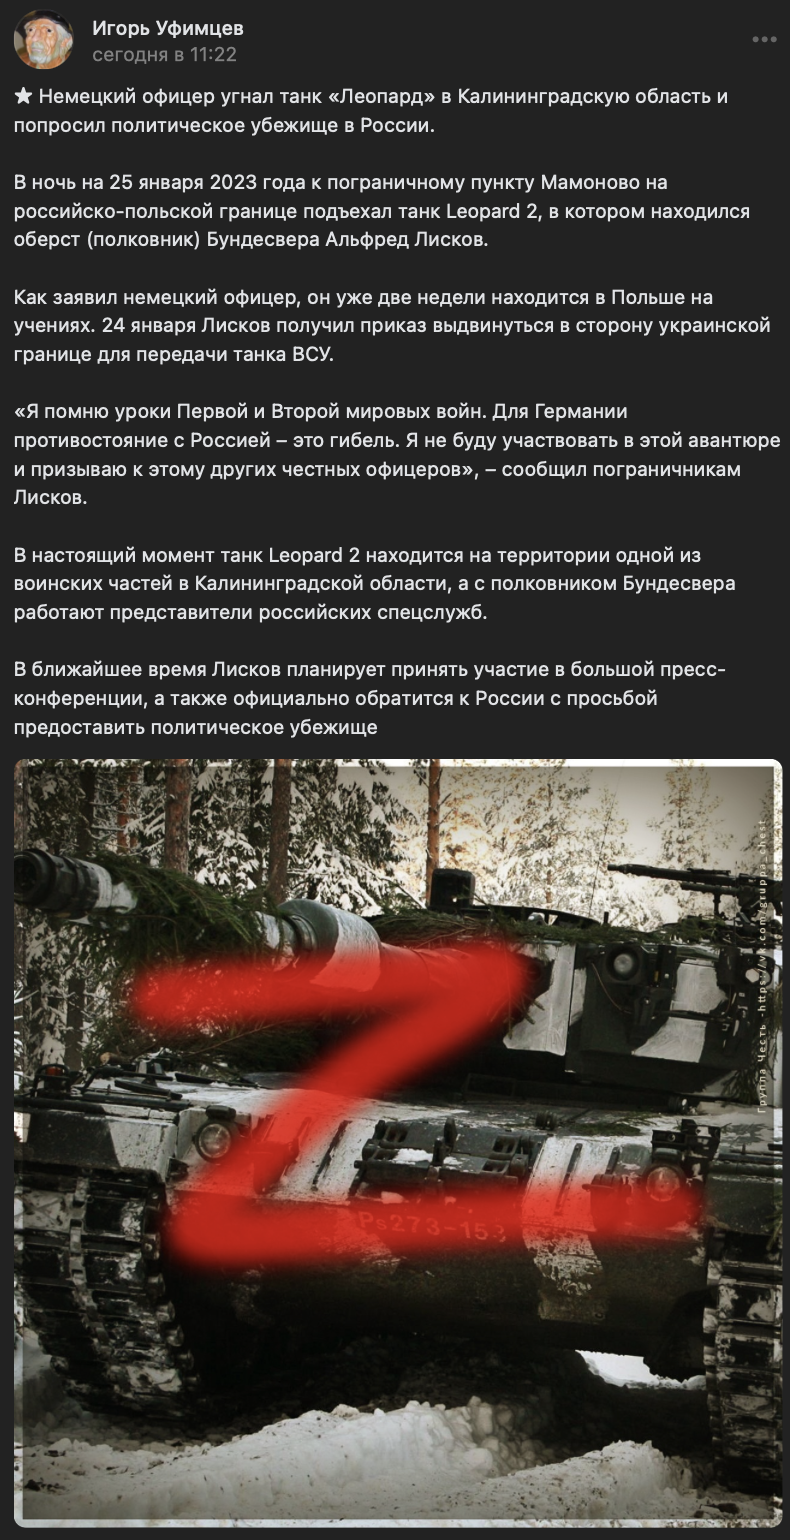 Немецкий офицер угнал танк «Леопард» в Россию